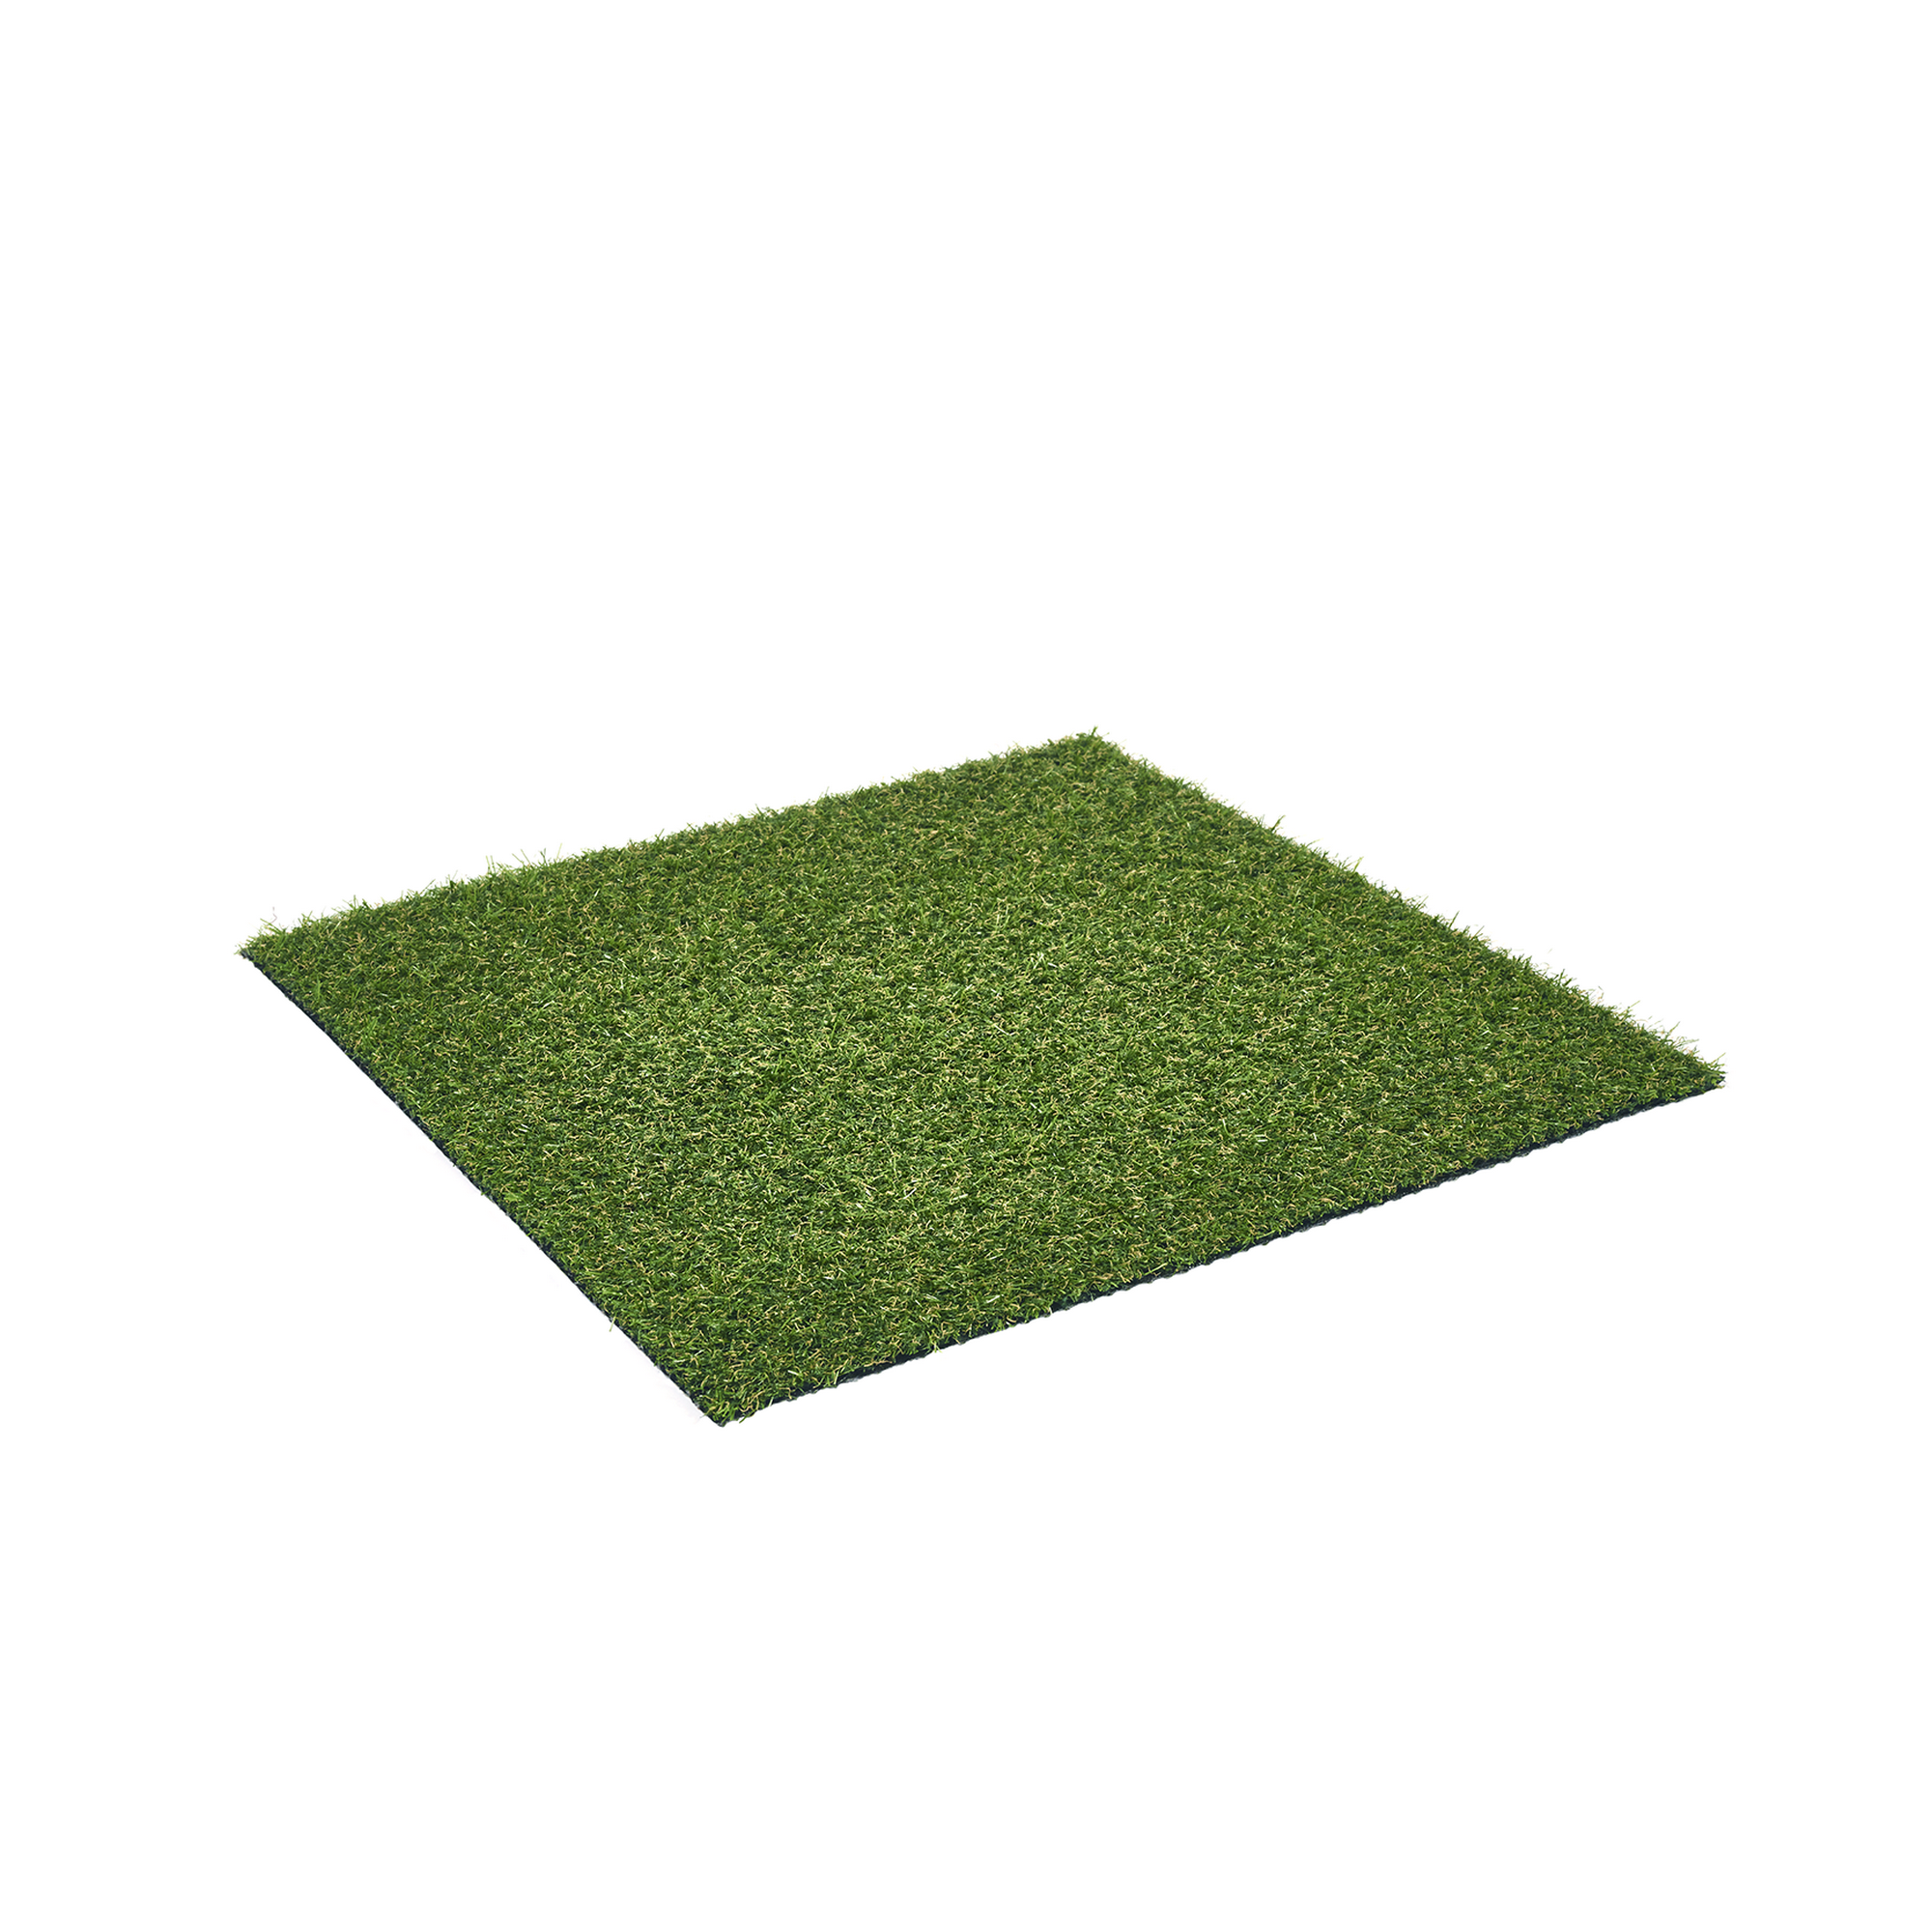 Rasenteppich 'Cocoon' Meterware grün, Breite 400 cm + product picture